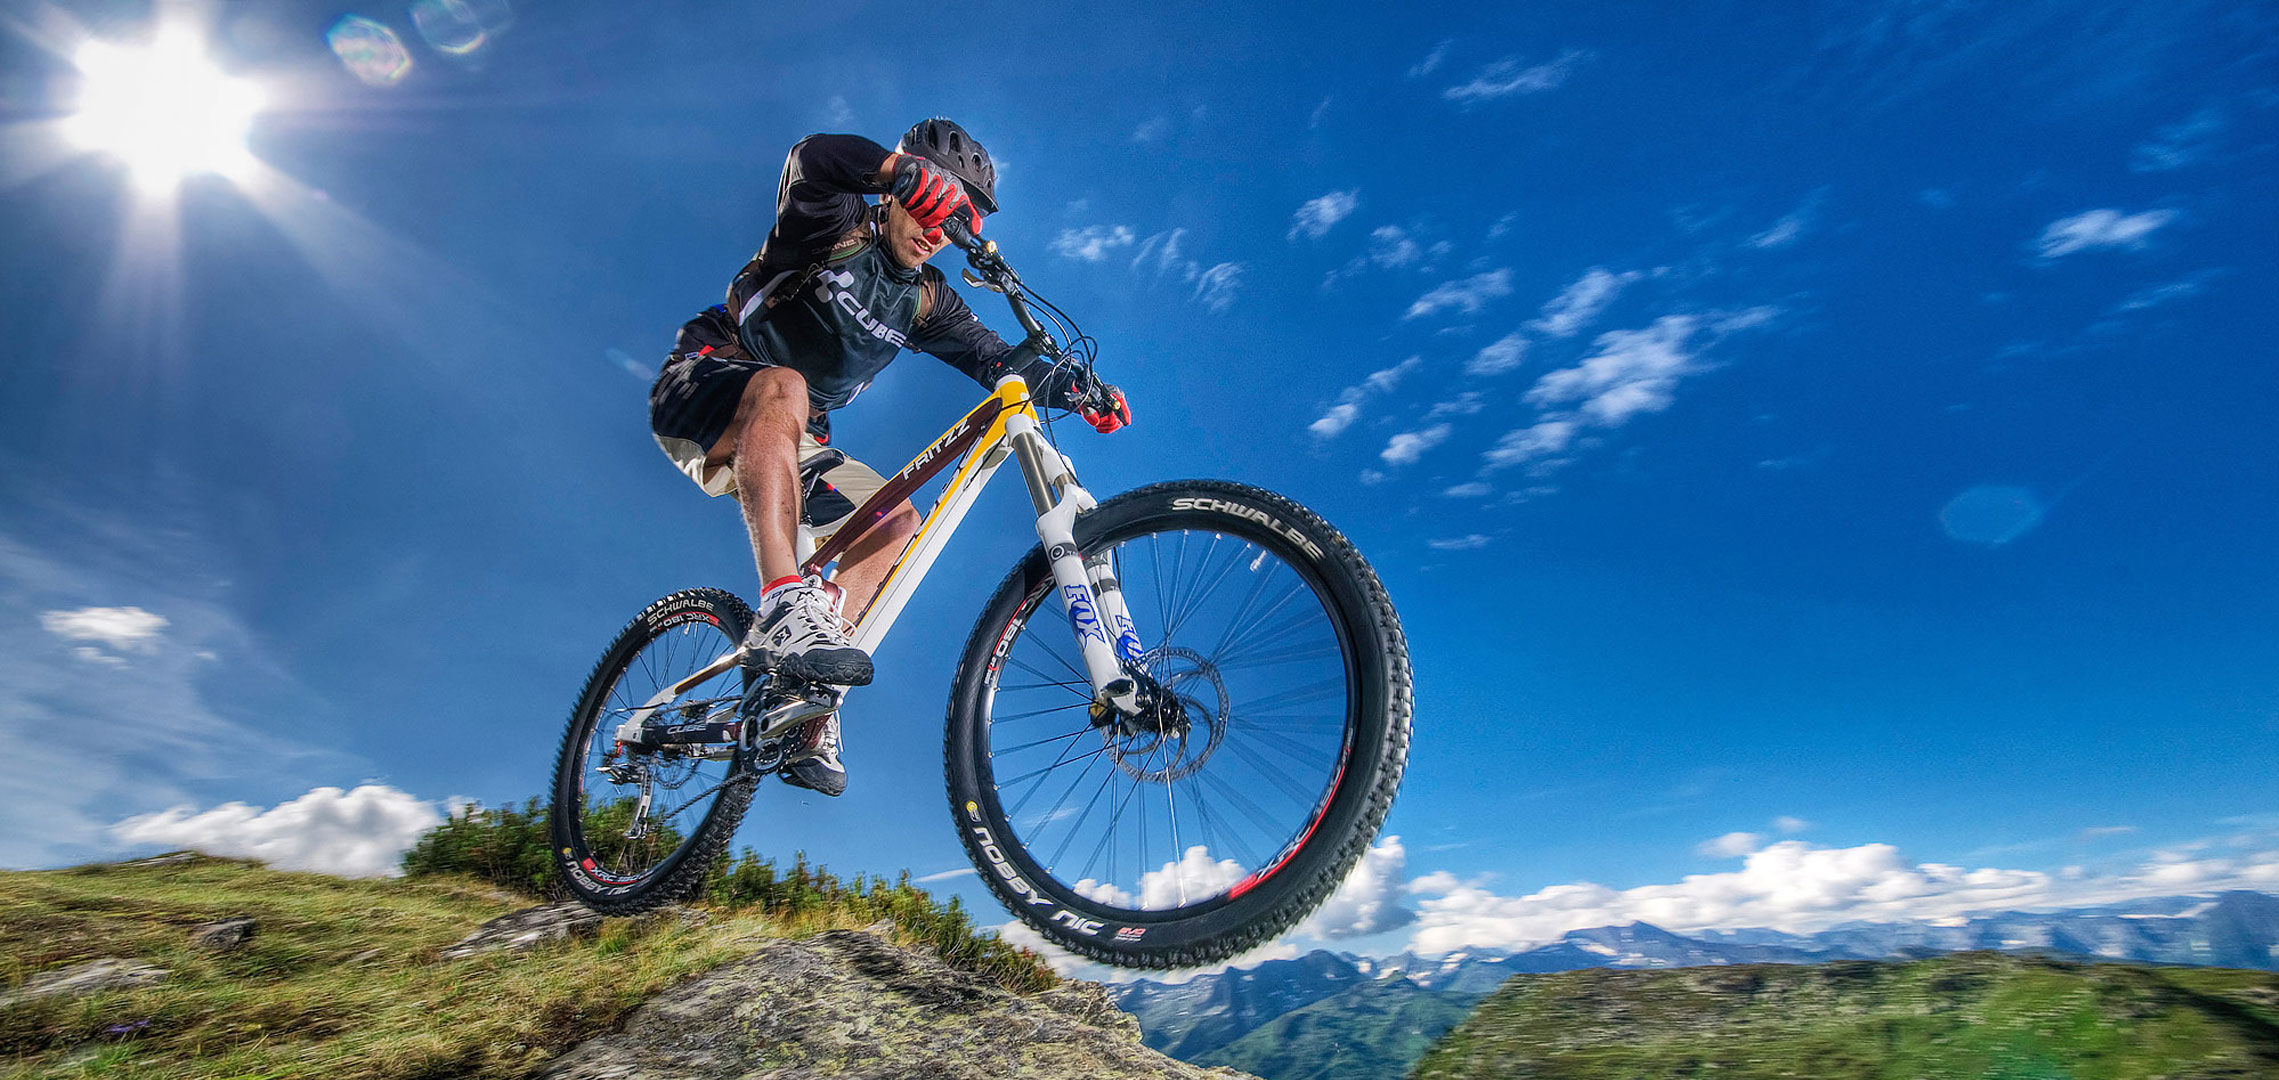 Mountain Bike wallpaper HD. Free desktop background 2016 in ...